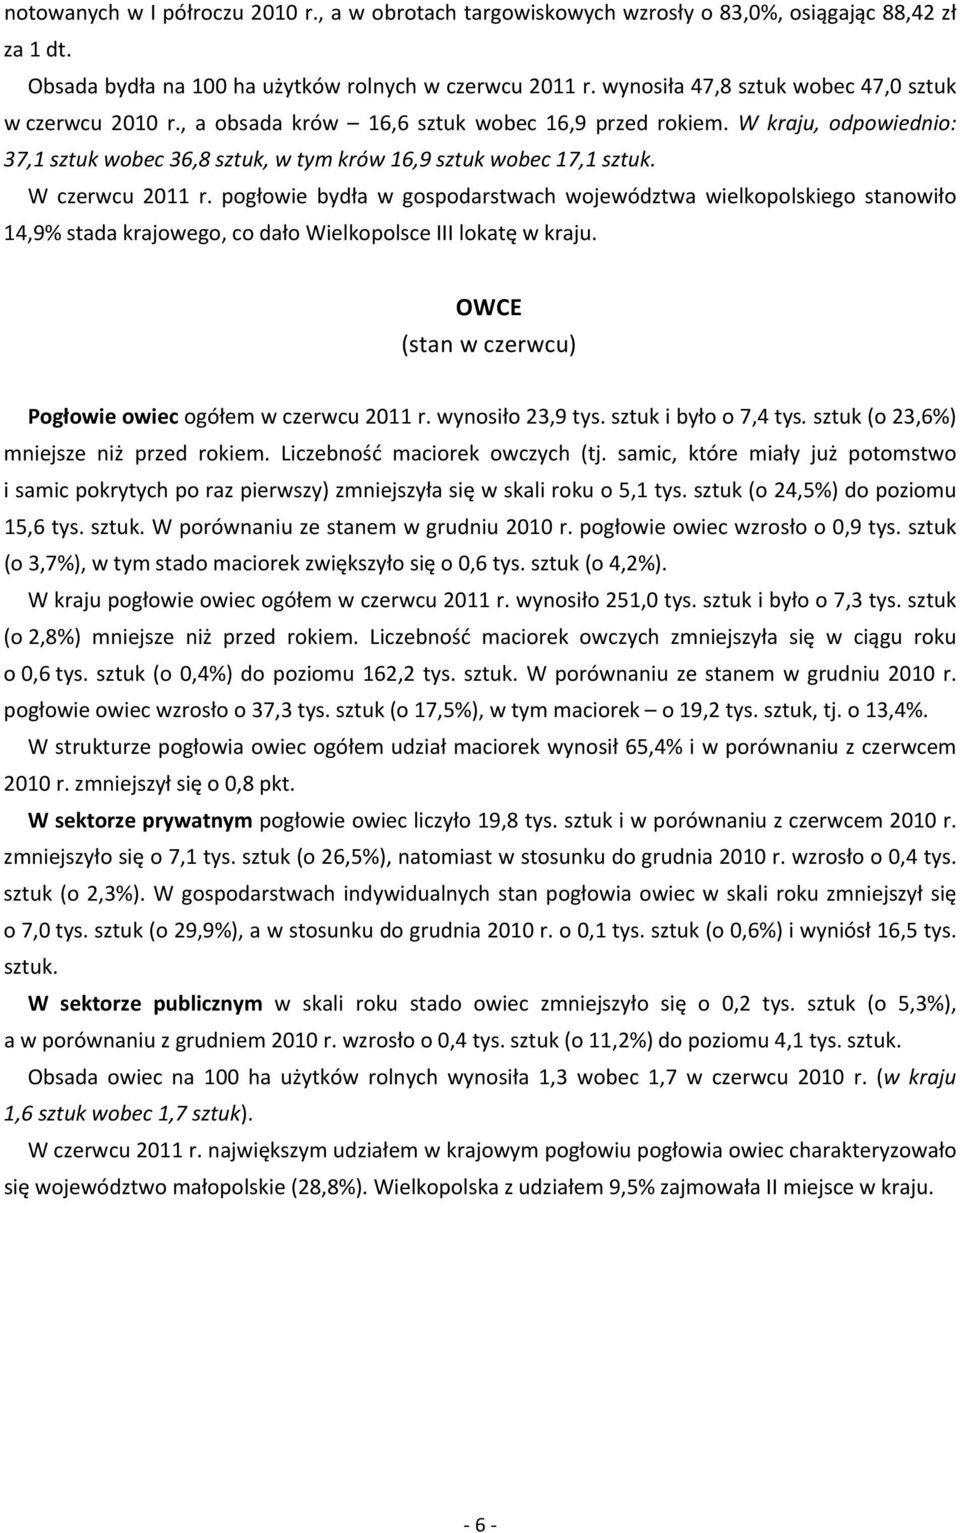 W czerwcu 2011 r. pogłowie bydła w gospodarstwach województwa wielkopolskiego stanowiło 14,9% stada krajowego, co dało Wielkopolsce III lokatę w kraju.